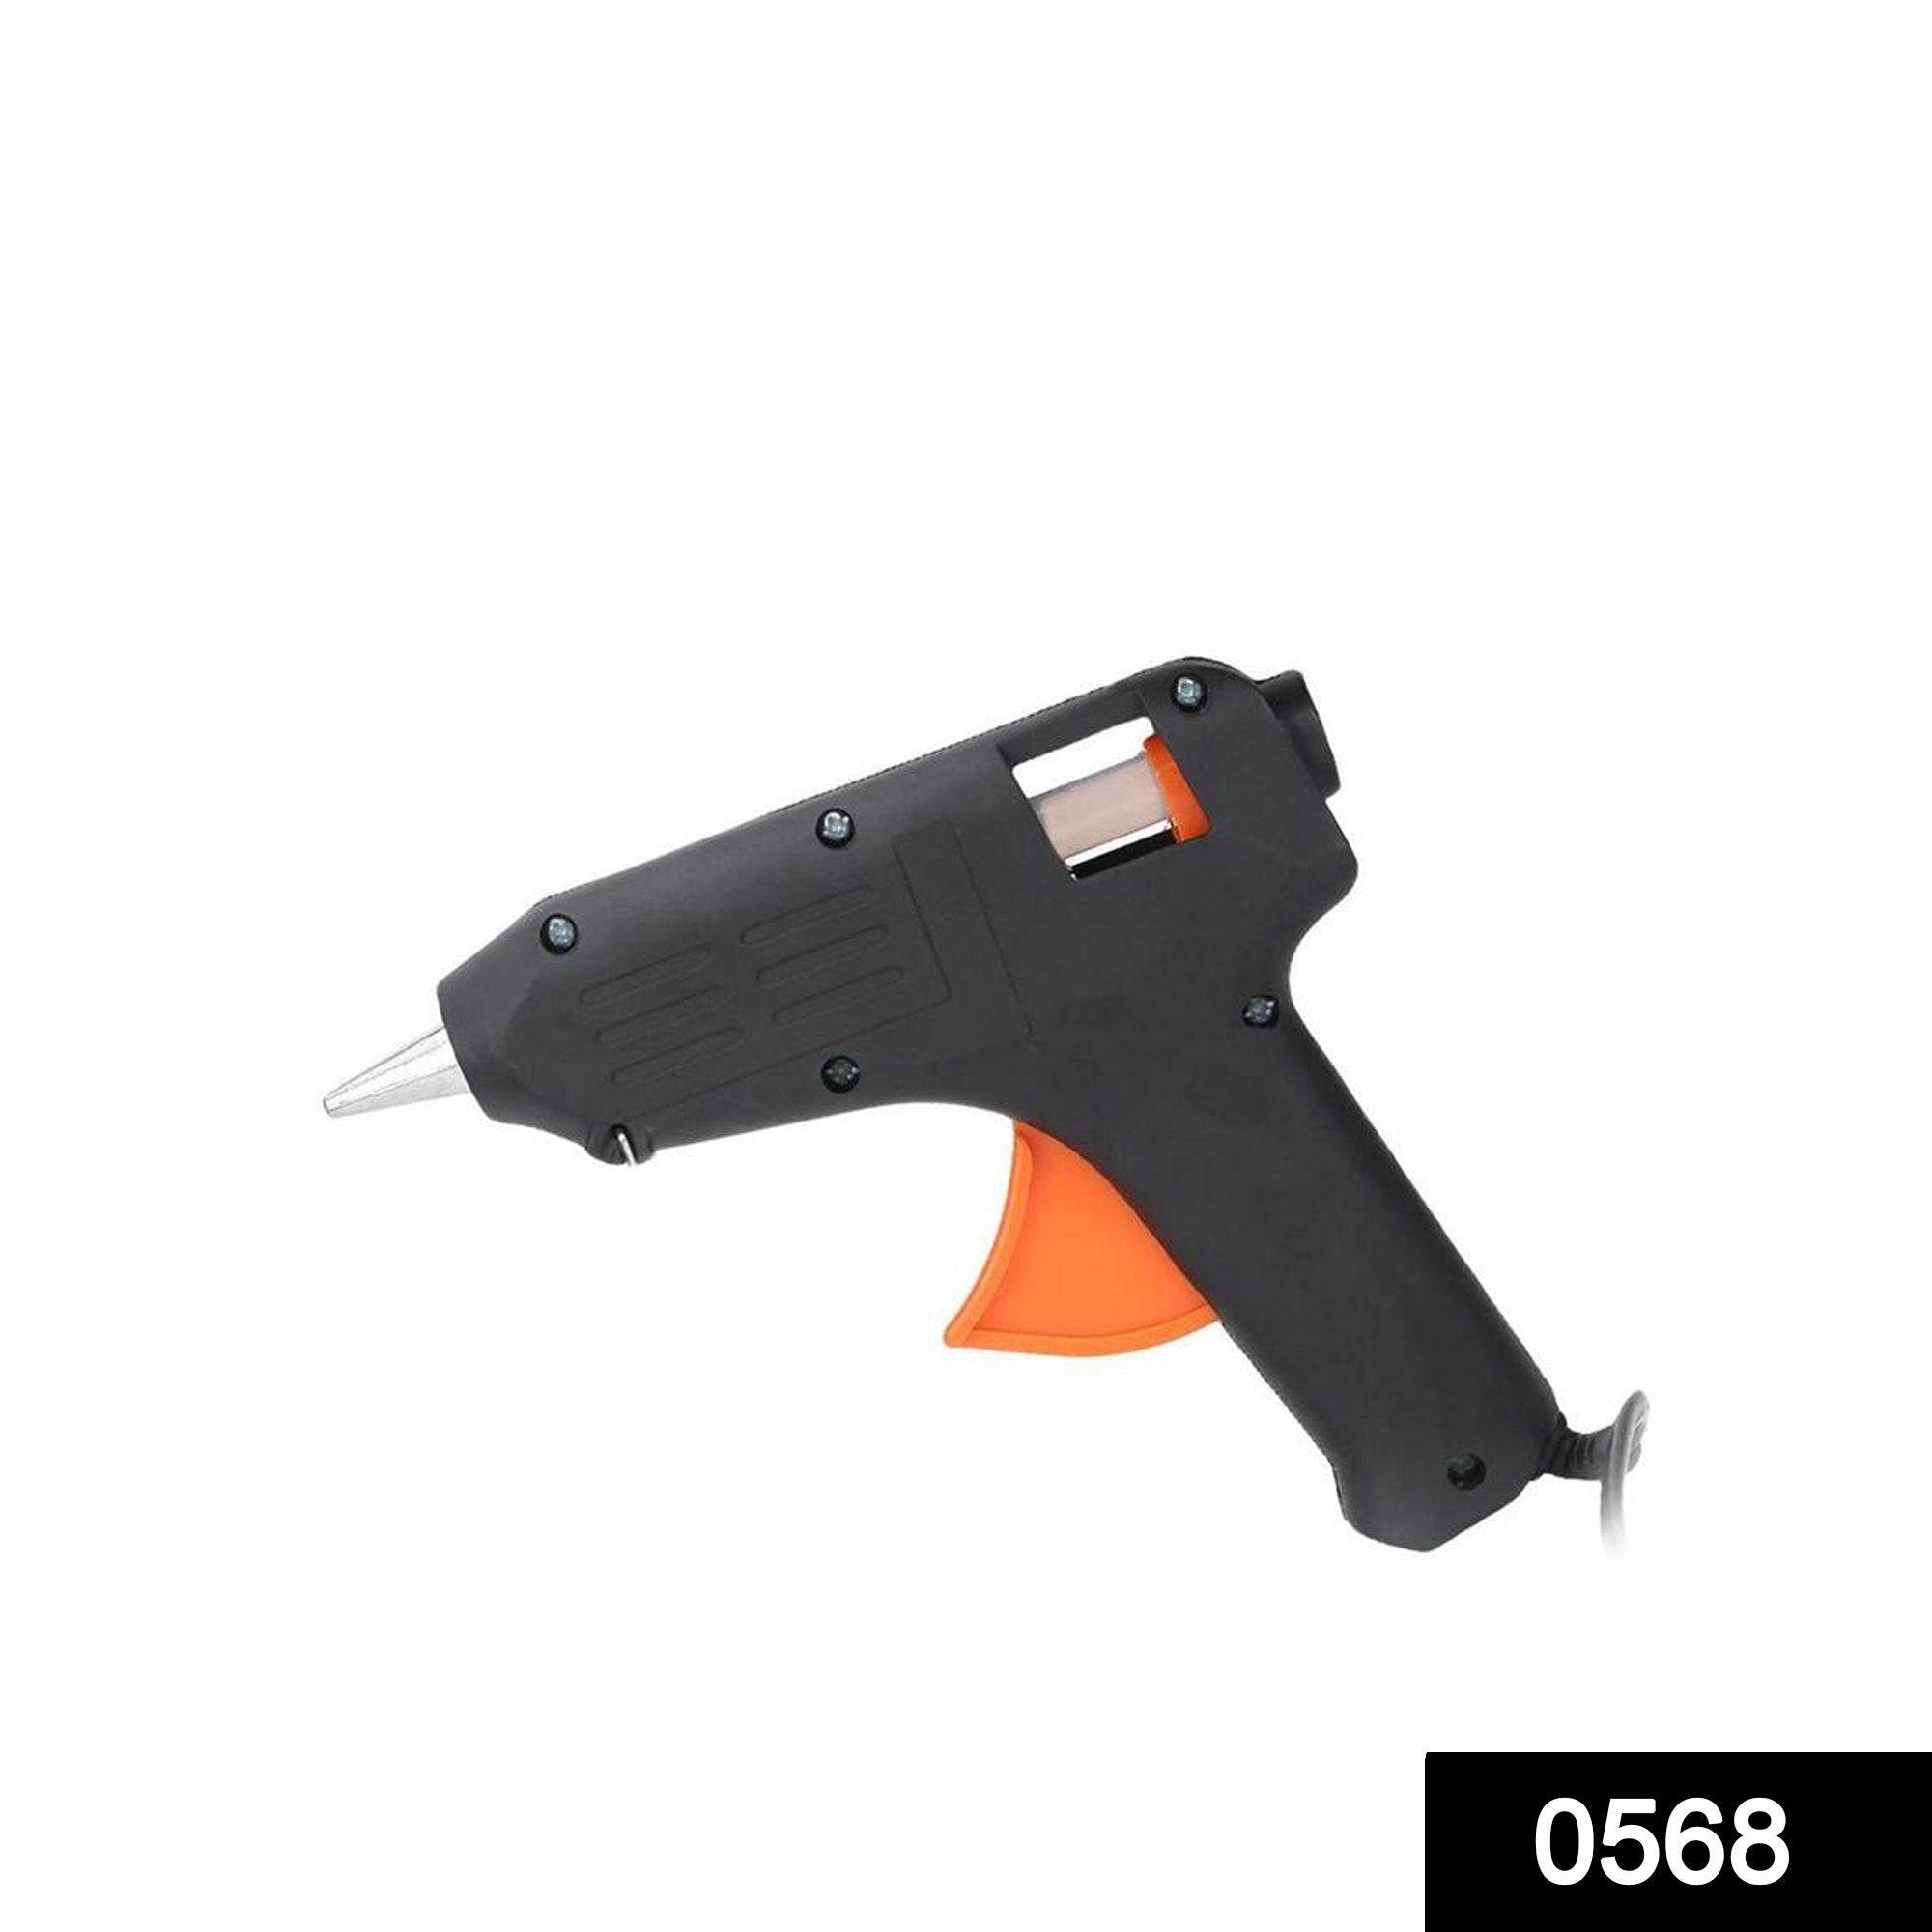 ambitionofcreativity in 60 watt hot melt glue gun with 5 pieces glue sticks free